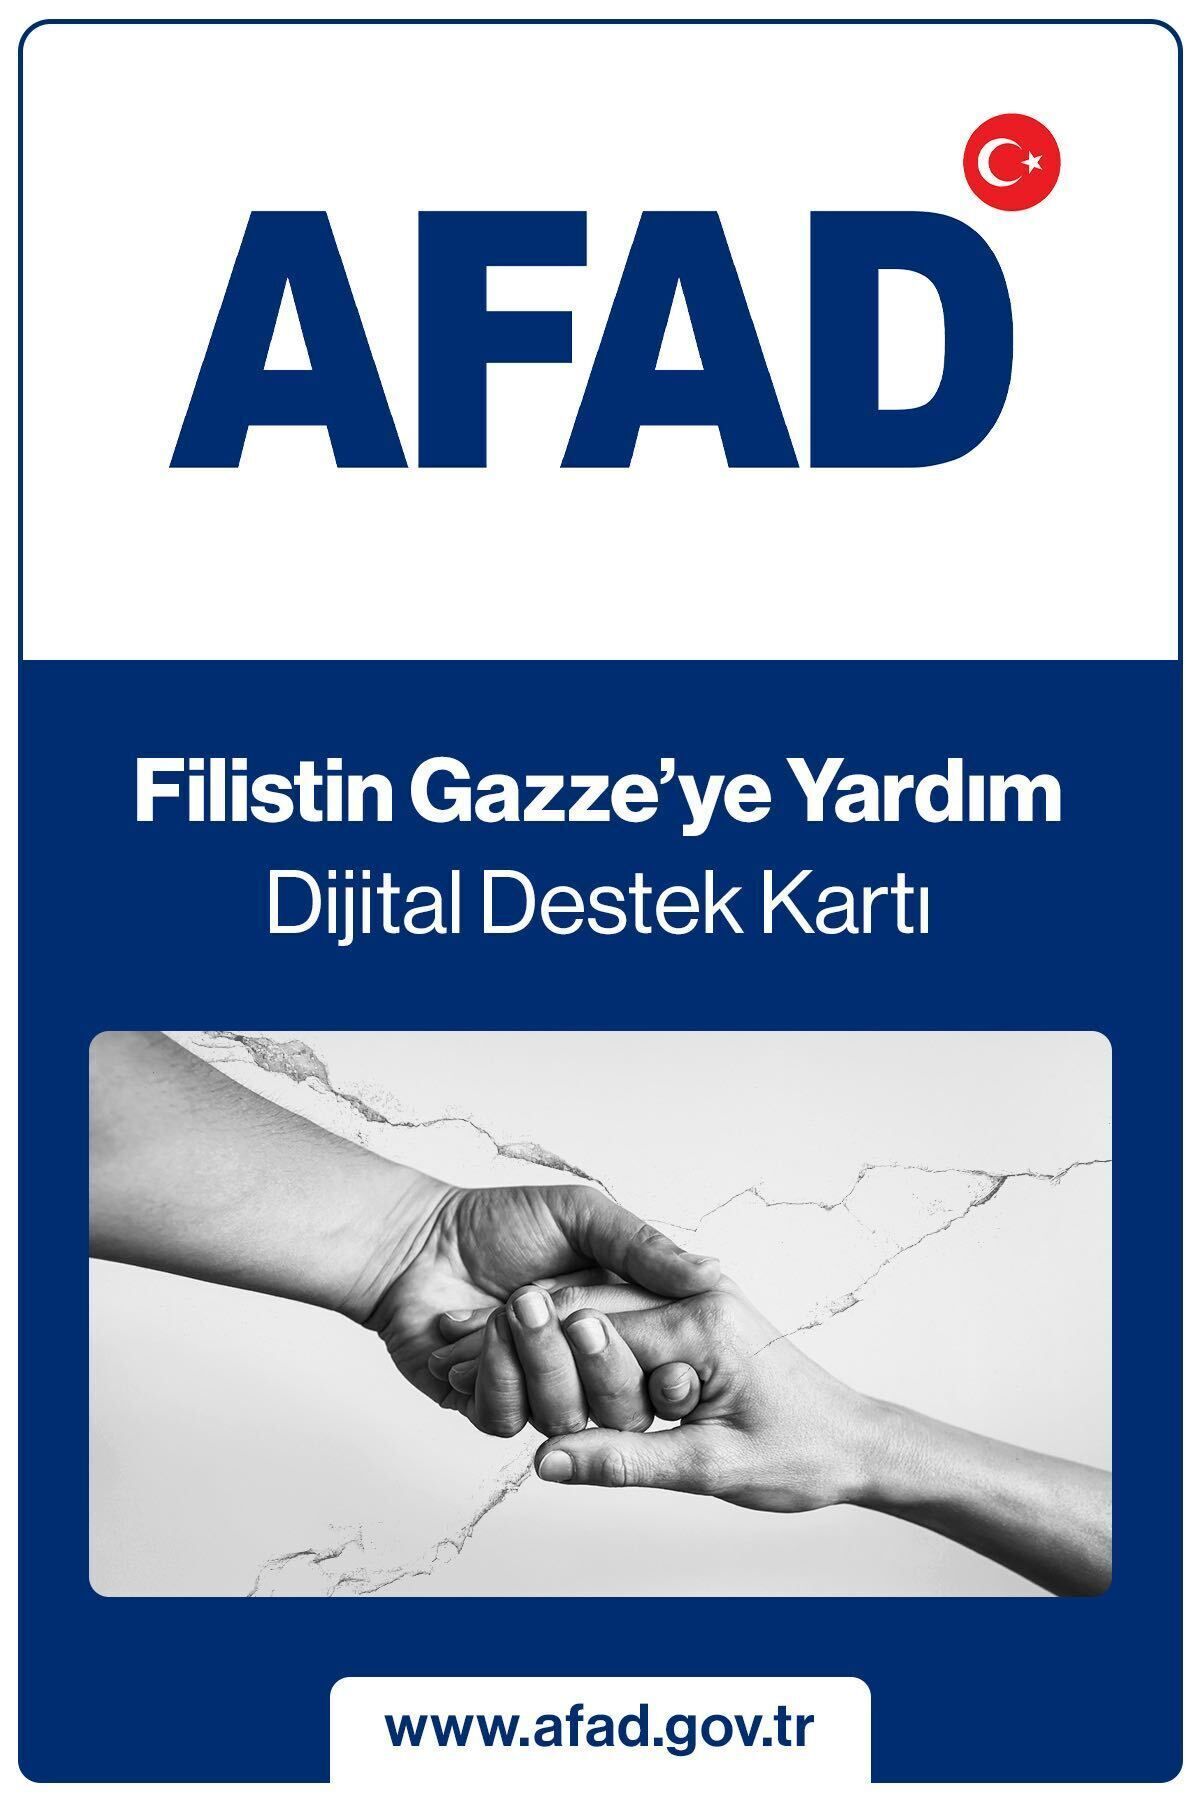 AFAD Filistin Gazze'ye Yardım Dijital Destek Kartı